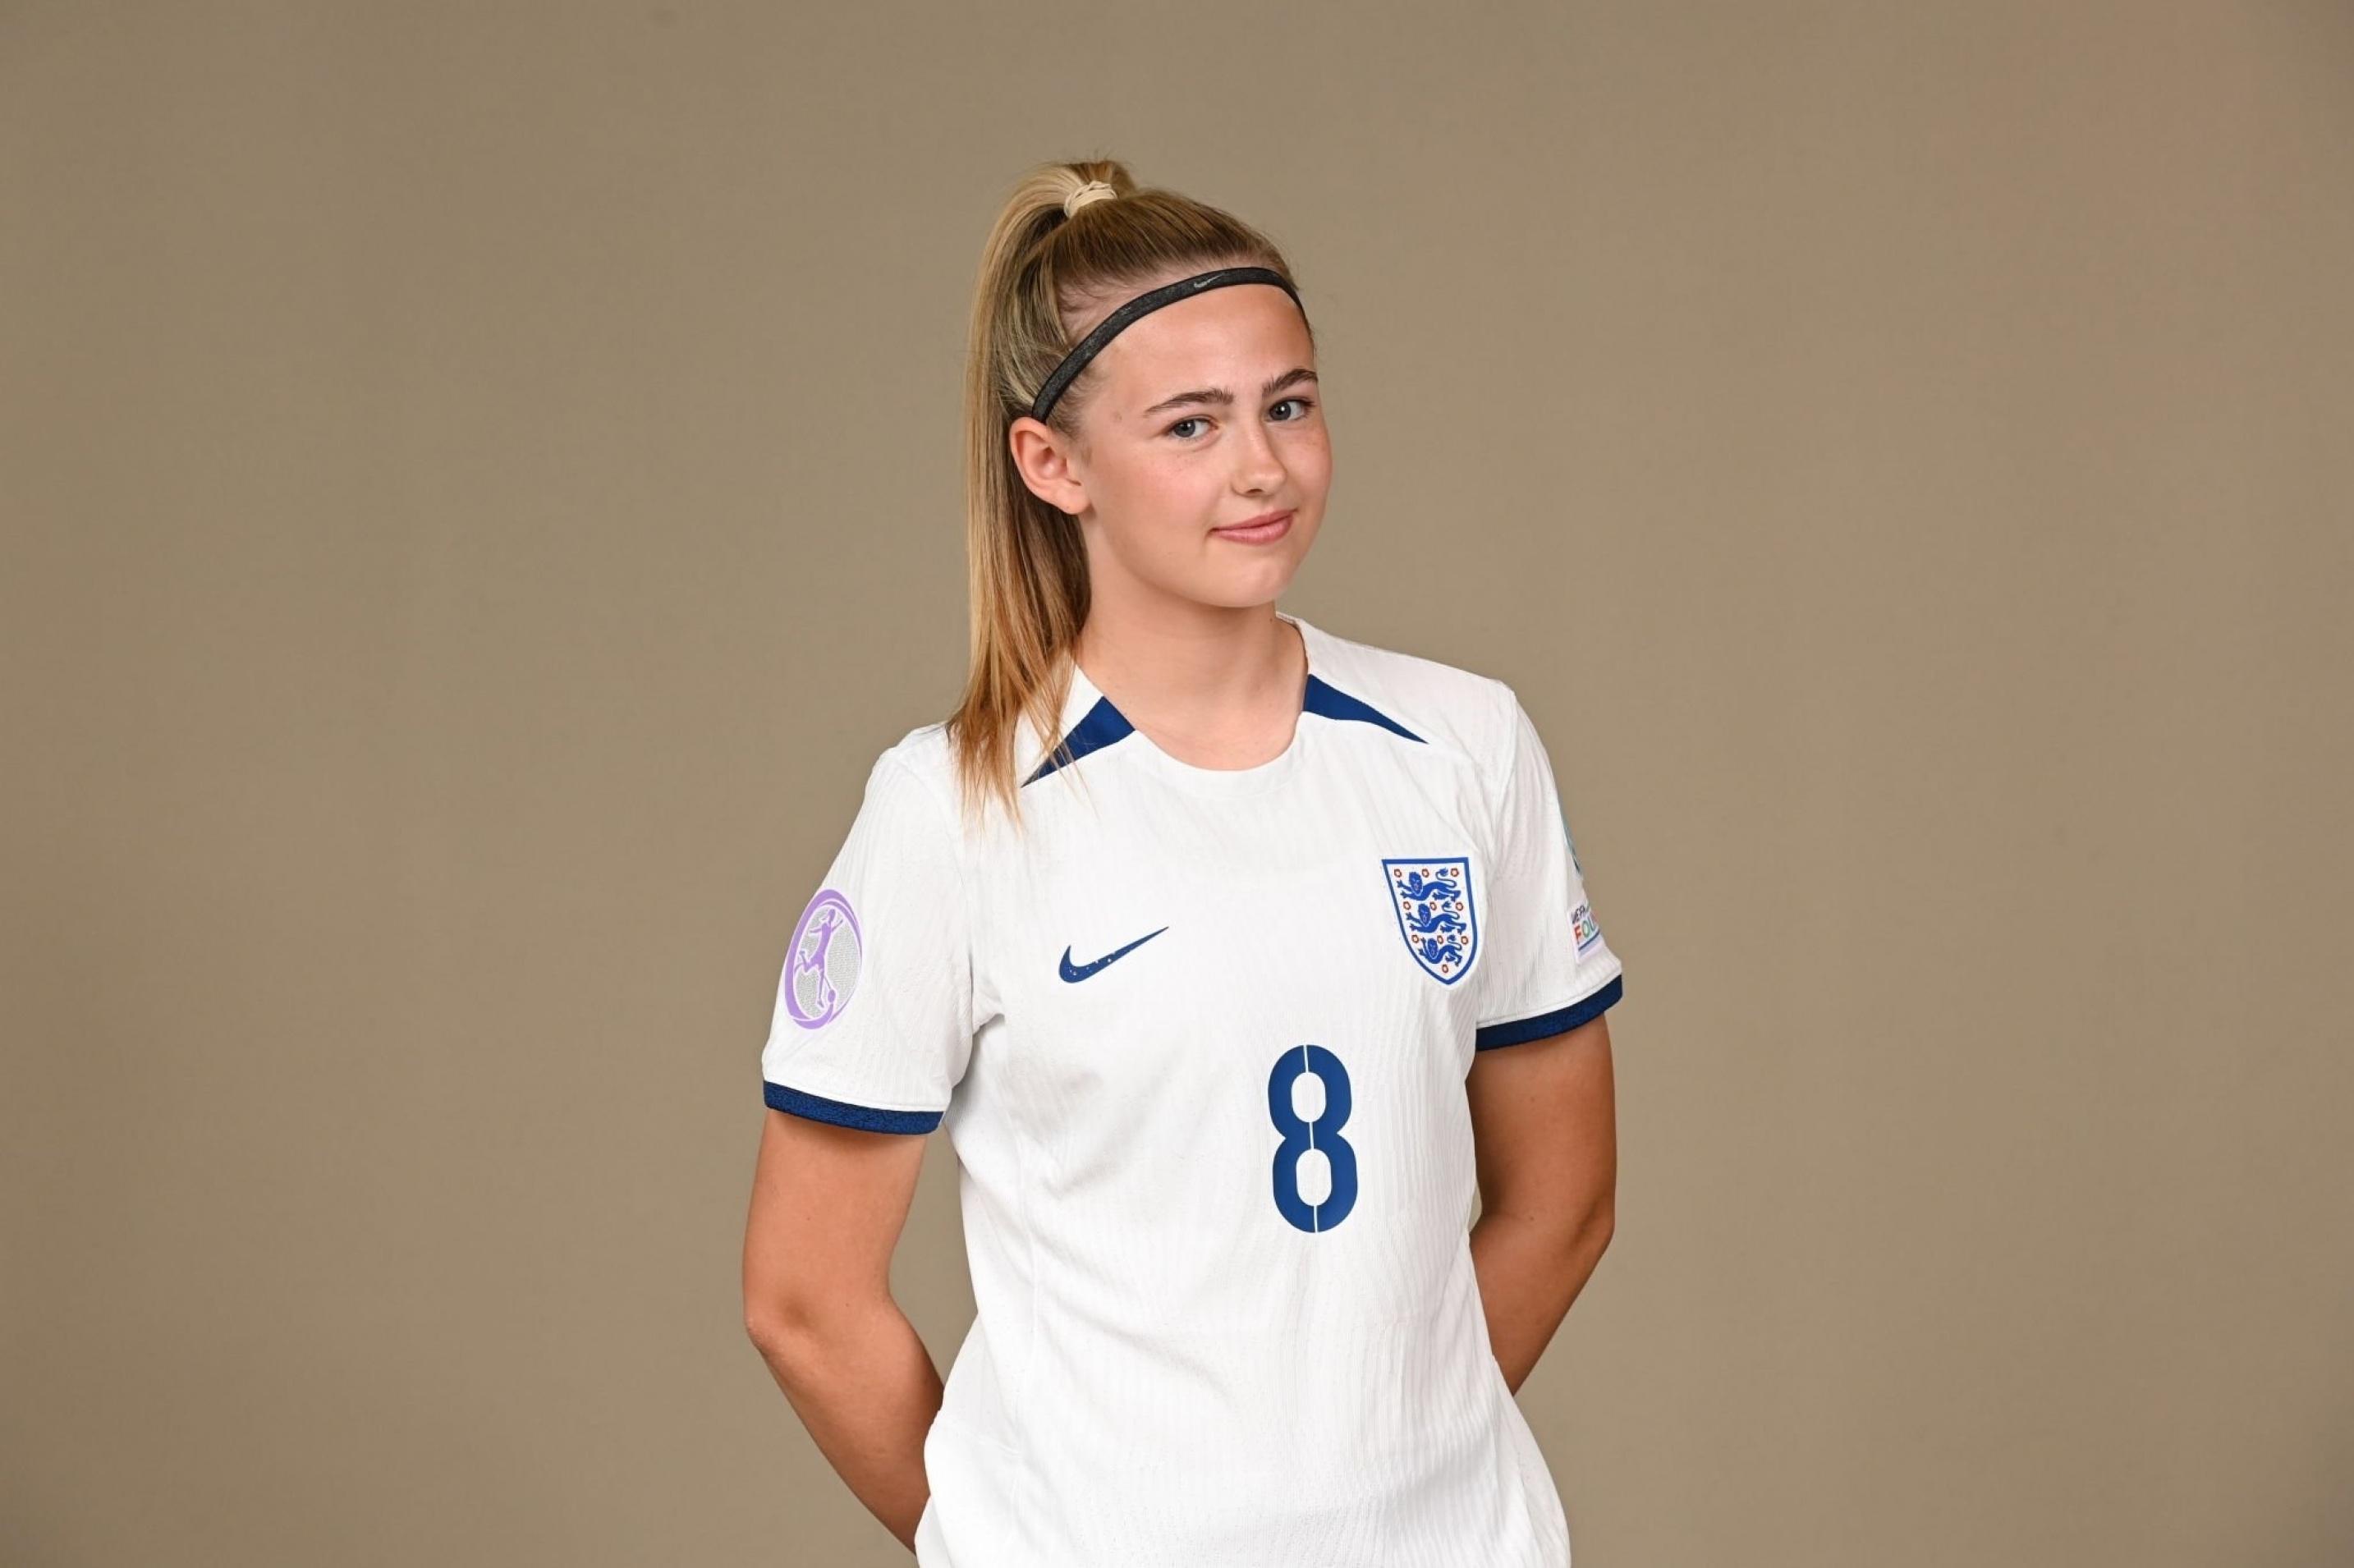 8号 Alexia Potter，是英格兰U17女足队长，来自切尔西青训，真的很(1)